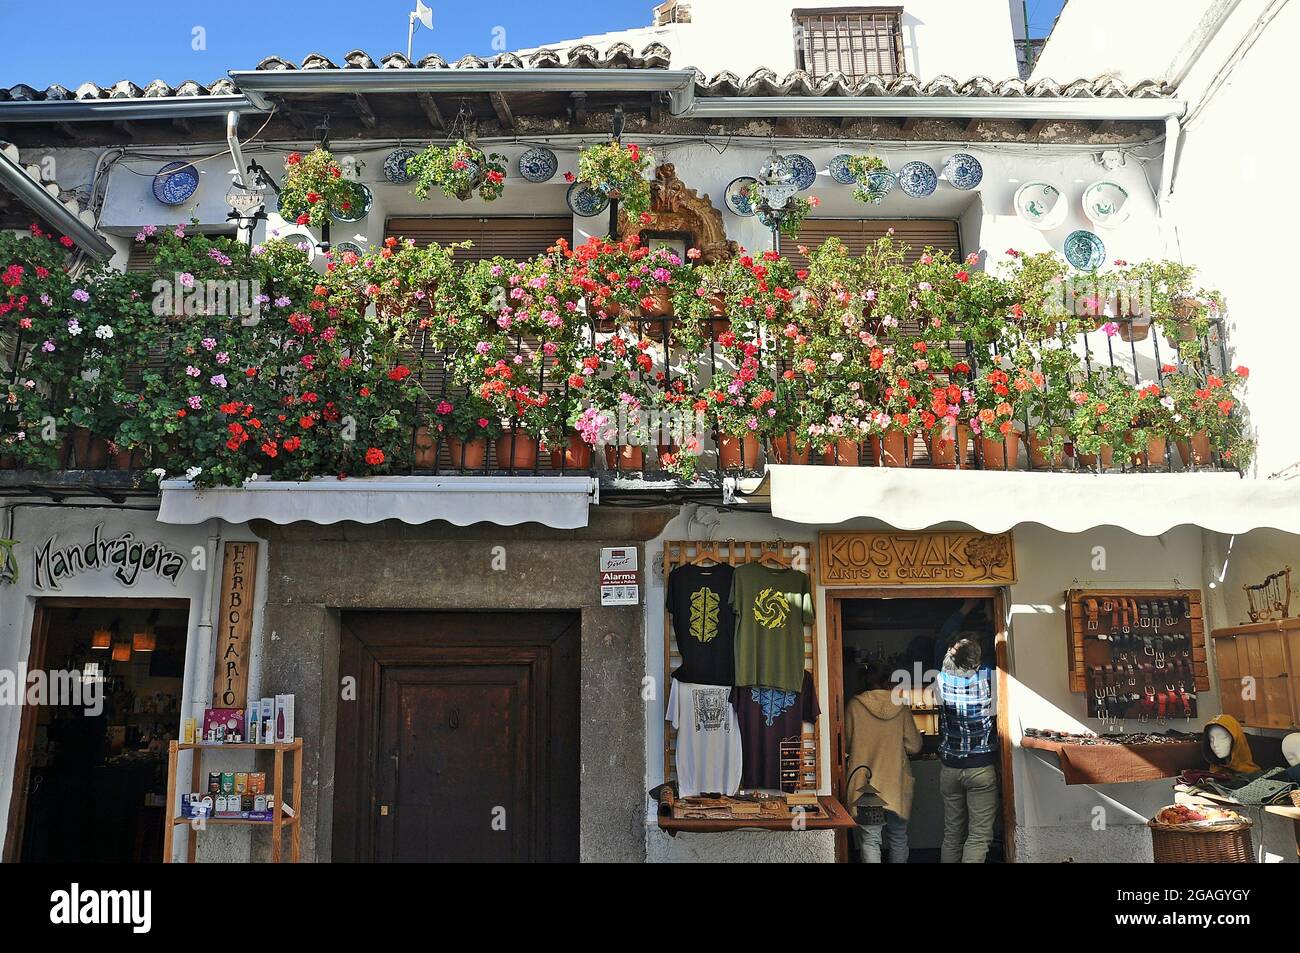 Strade del quartiere Albaicin nella città andalusa di Granada, Spagna Foto Stock